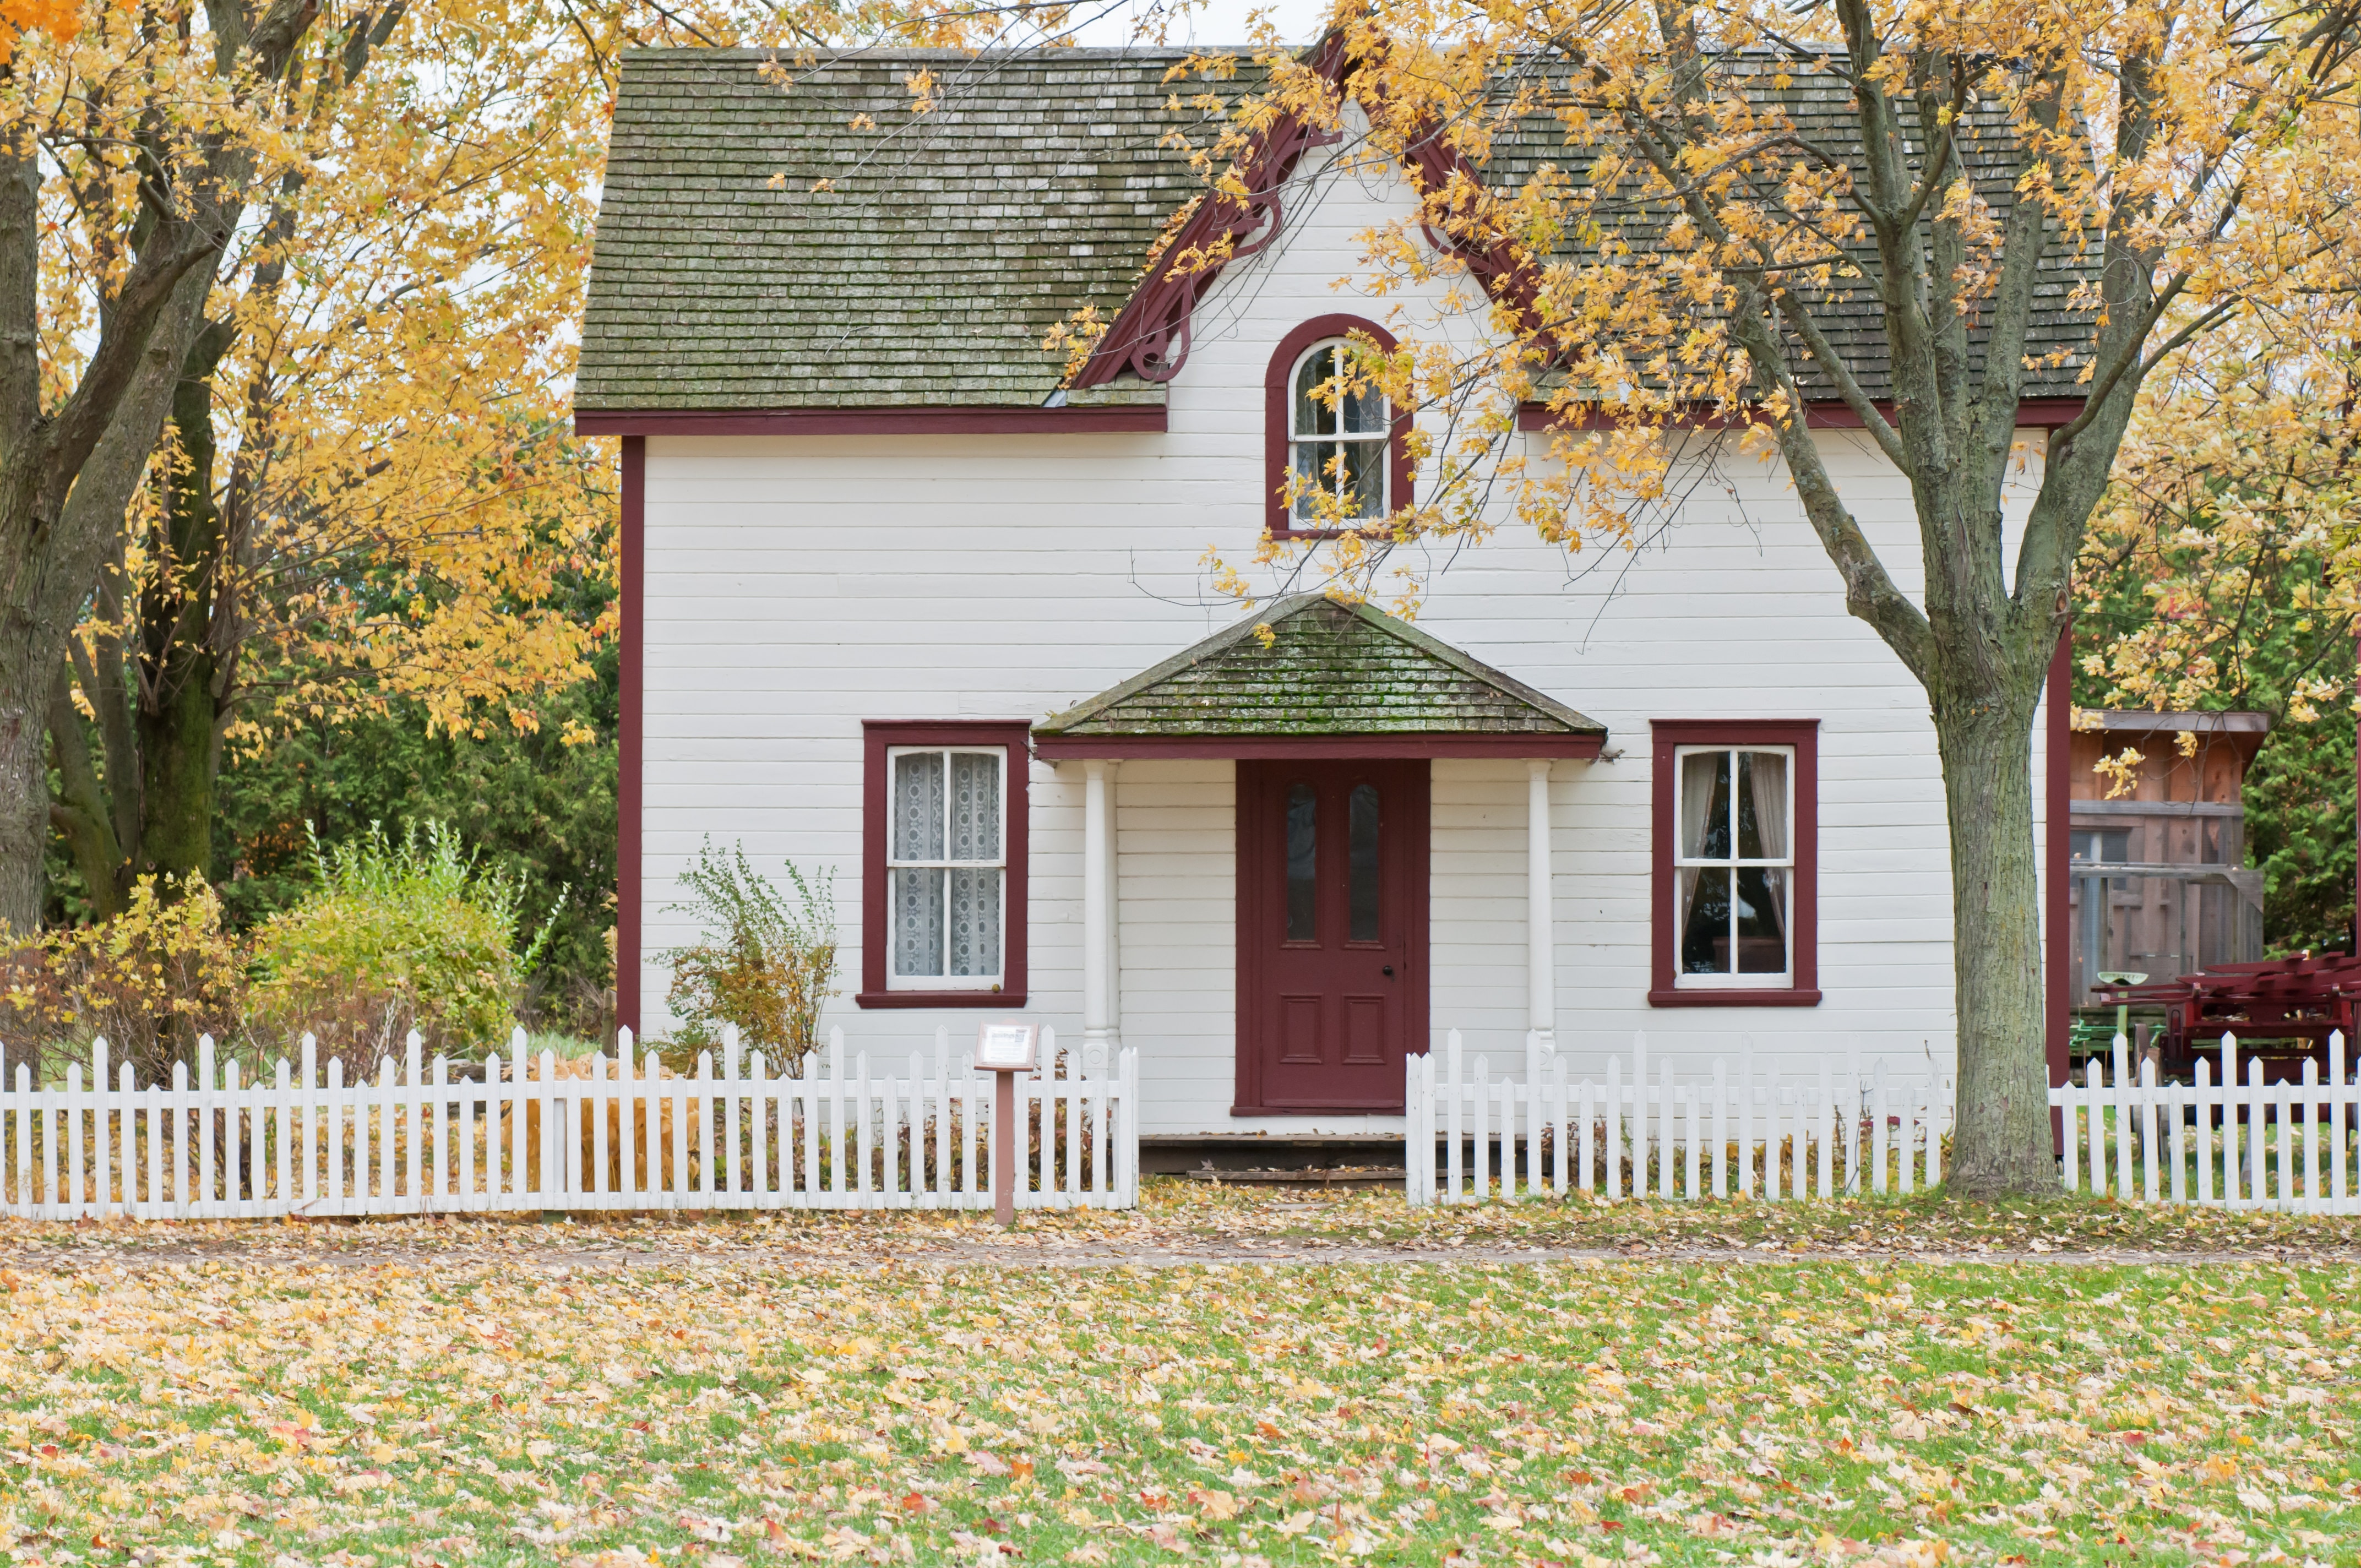 maison blanche automne feuilles jaunes